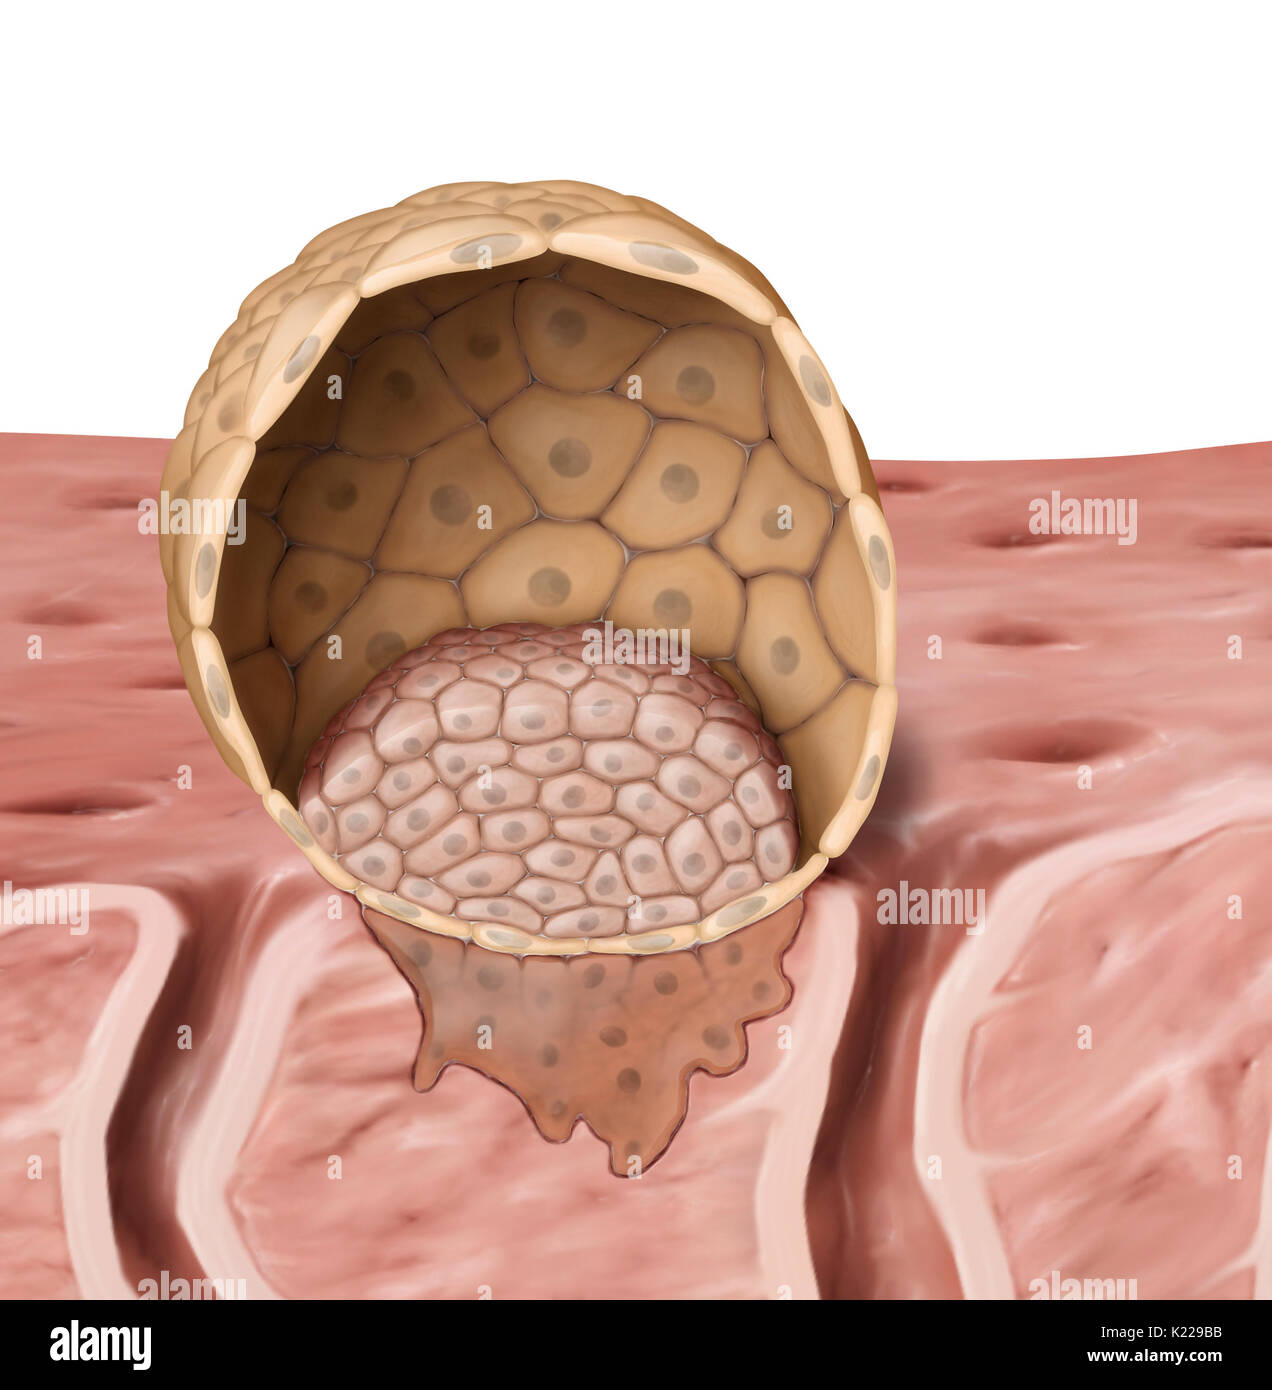 Un blastocyste est un embryon de 5 à 7 jours, suivant la fertilisation. Il se compose d'une cavité centrale et deux types distincts de cellules, le trophoblaste et le bouton embryonnaire. Banque D'Images